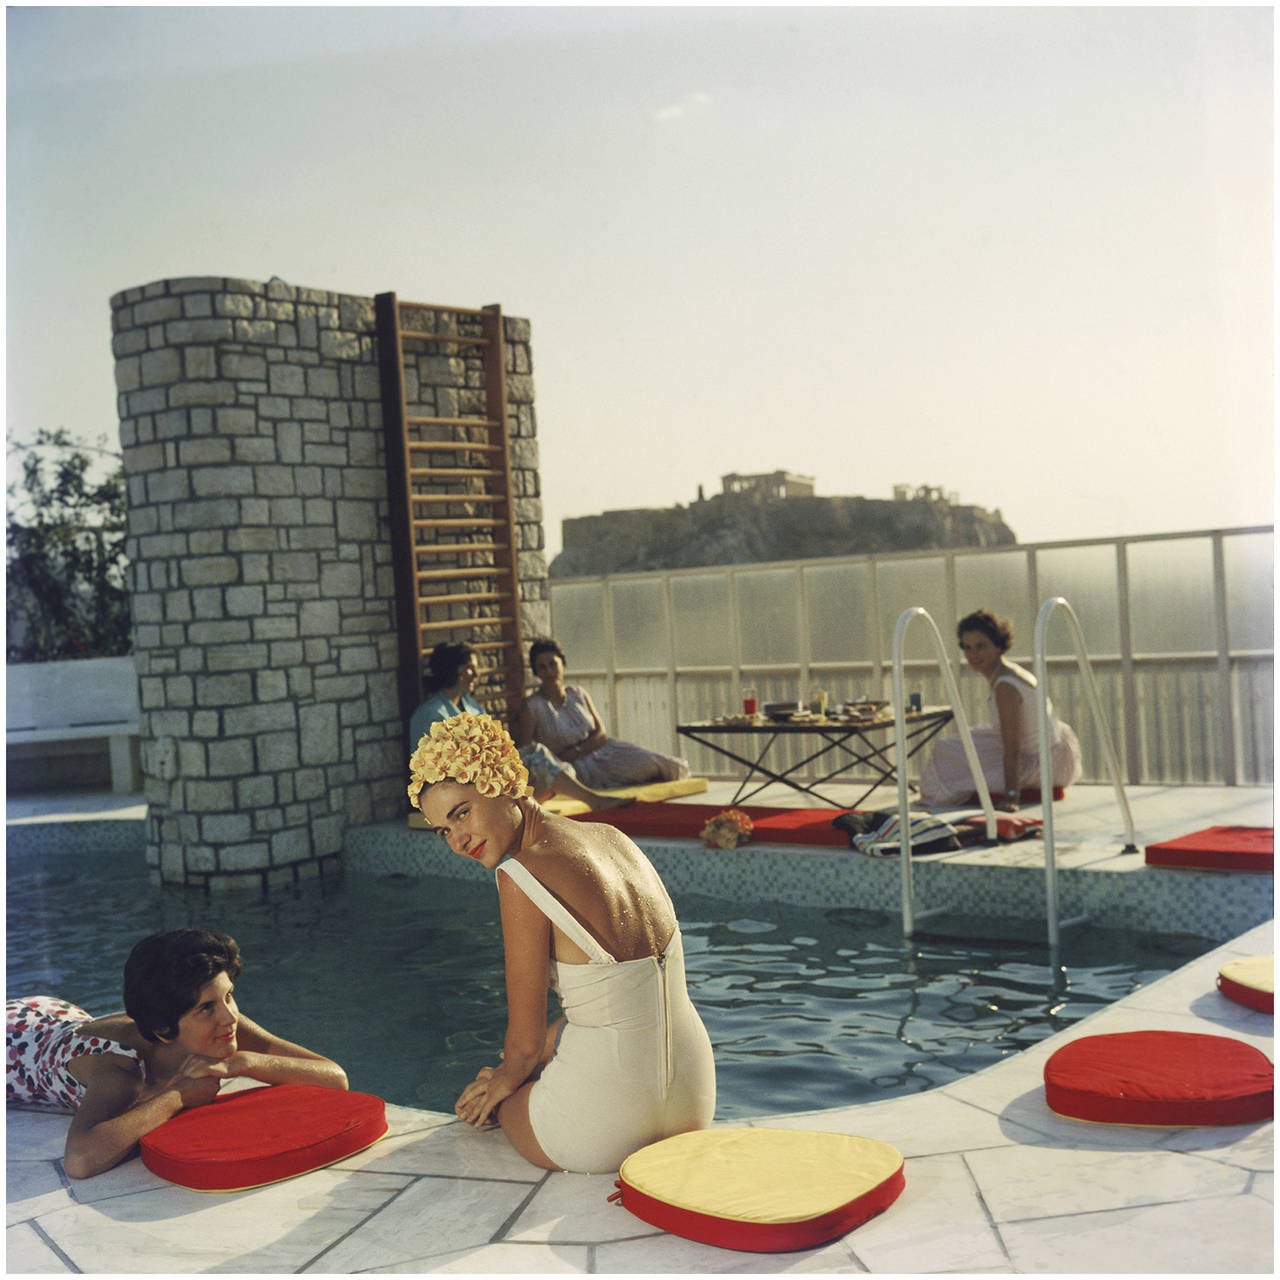 Jeunes femmes au bord de la piscine du penthouse Canellopoulos, Athènes, juillet 1961. L'acropole est à l'arrière-plan.

40 x 40 pouces
$5400

30 x 30 pouces
$4200

20 x 20 pouces
$3600

60 x 60 pouces
6300 $ (impression giclée, non disponible en